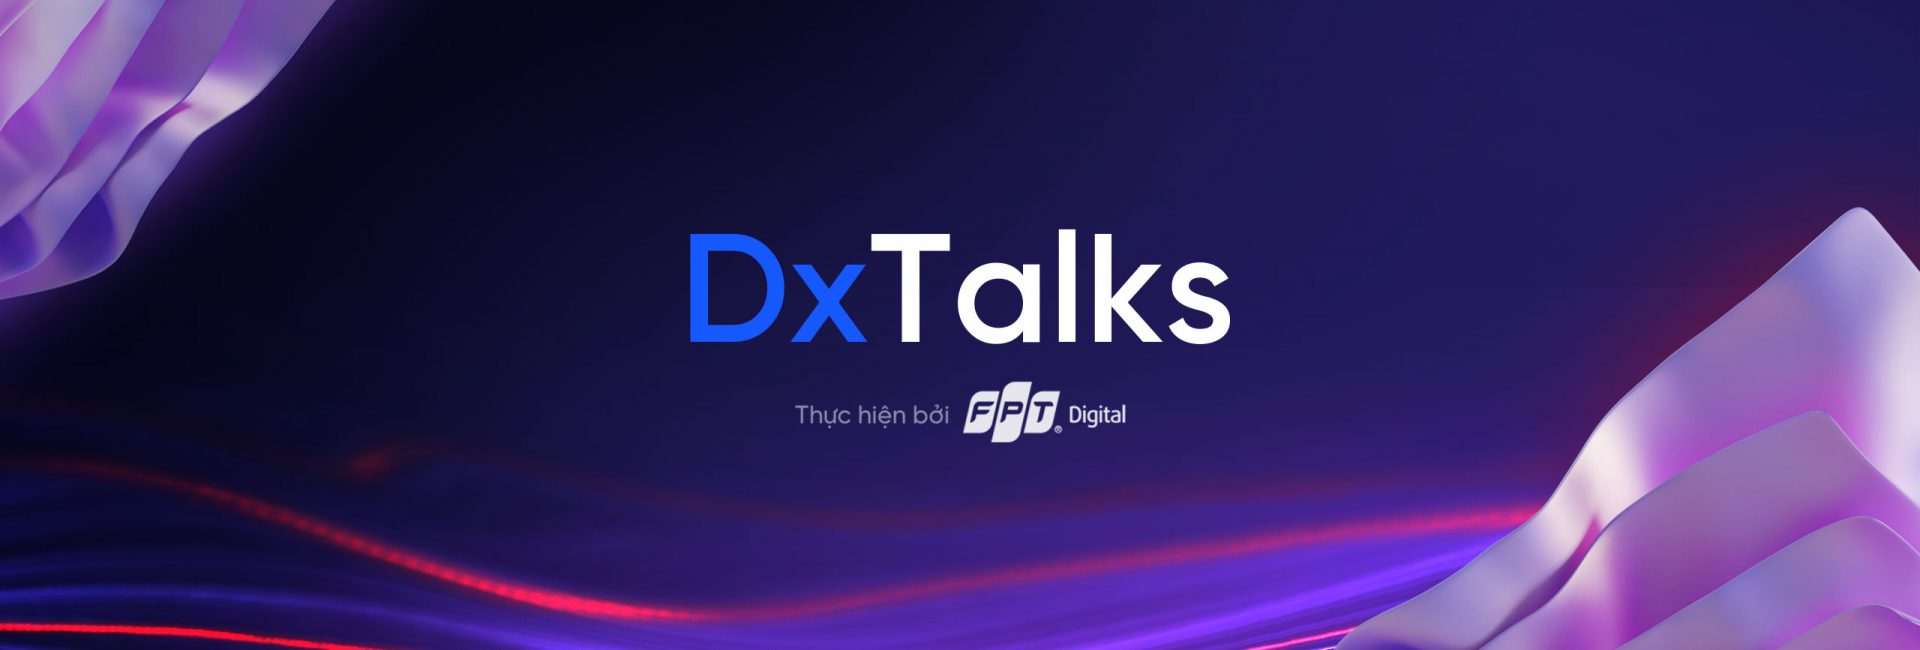 DxTalks EP02: “Xây dựng lộ trình chuyển đổi số doanh nghiệp”